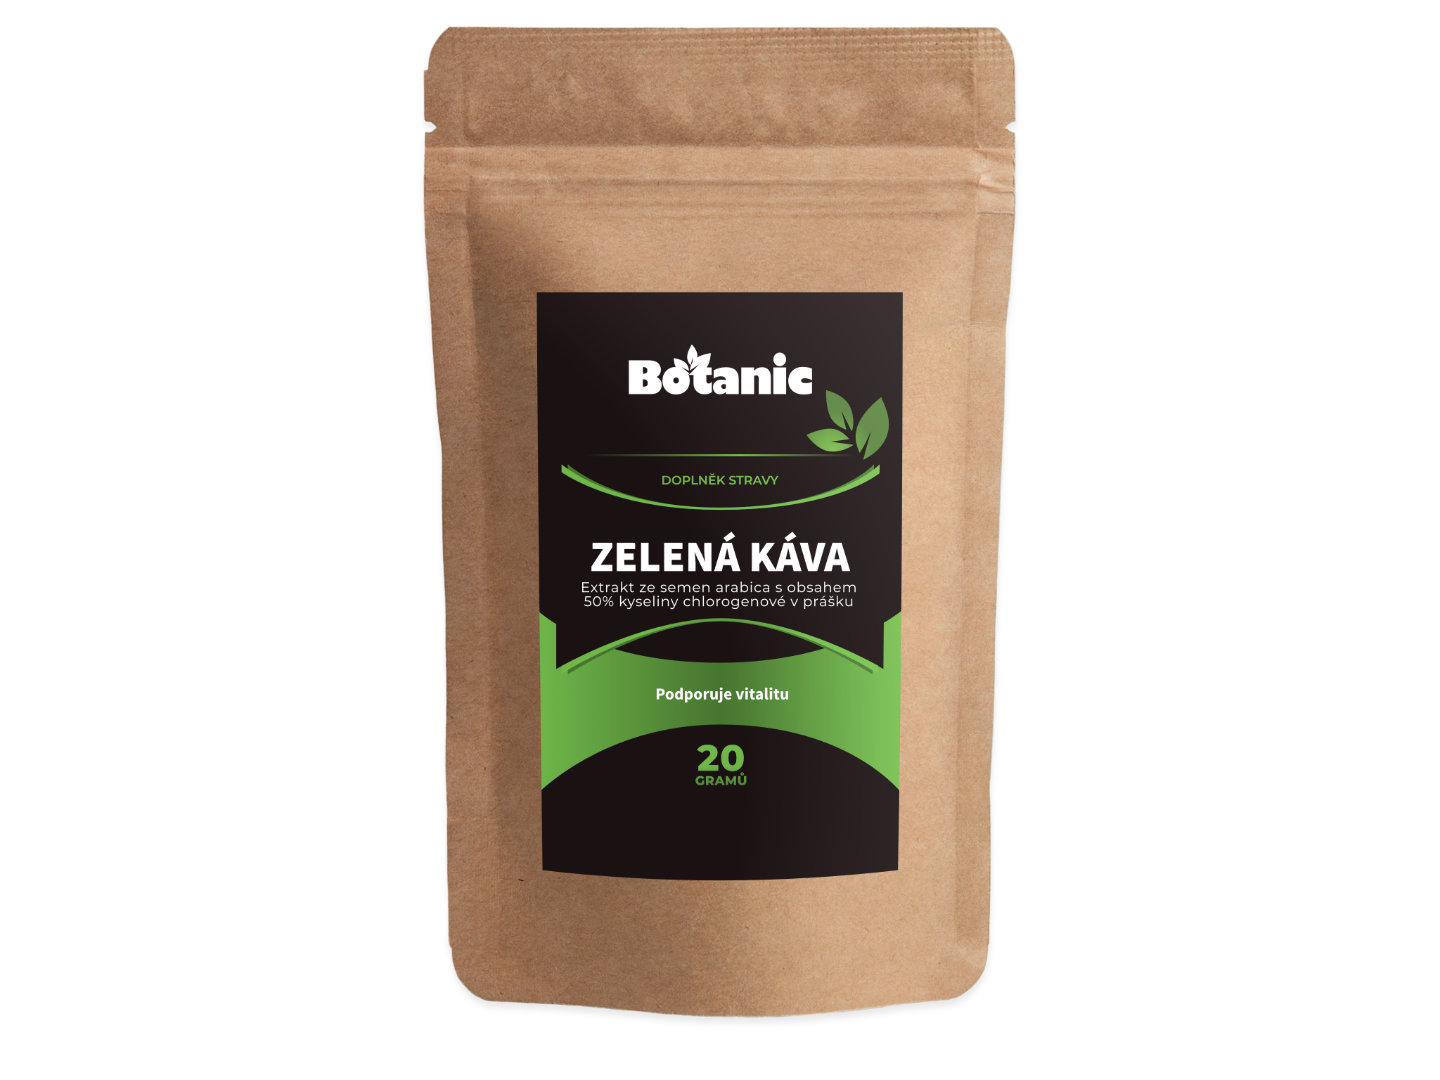 Botanic Zelená káva - Extrakt ze semen arabica s obsahem 50% kyseliny chlorogenové v prášku 20g